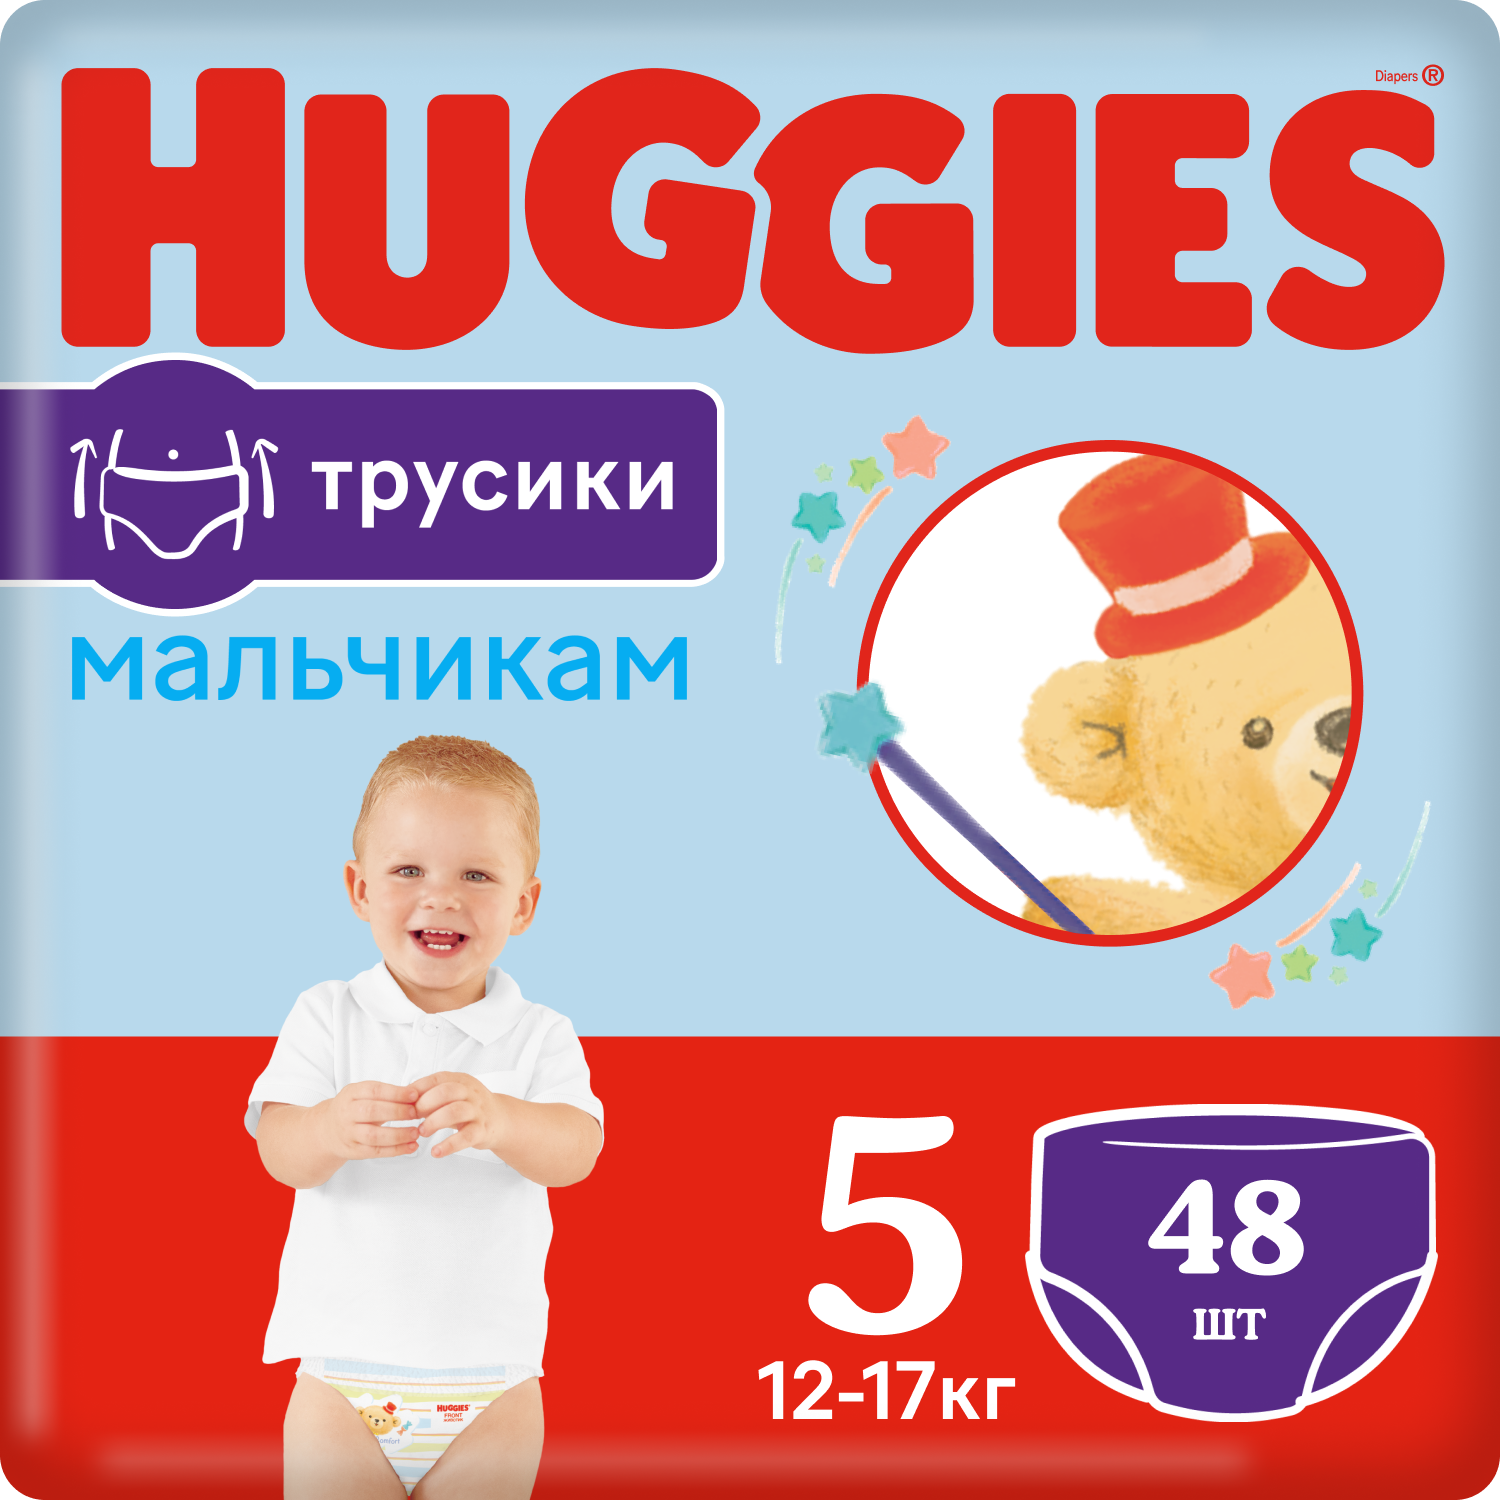 Huggies трусики для мальчиков 5 (12-17 кг), 48 шт., 5, 12 - 17 кг